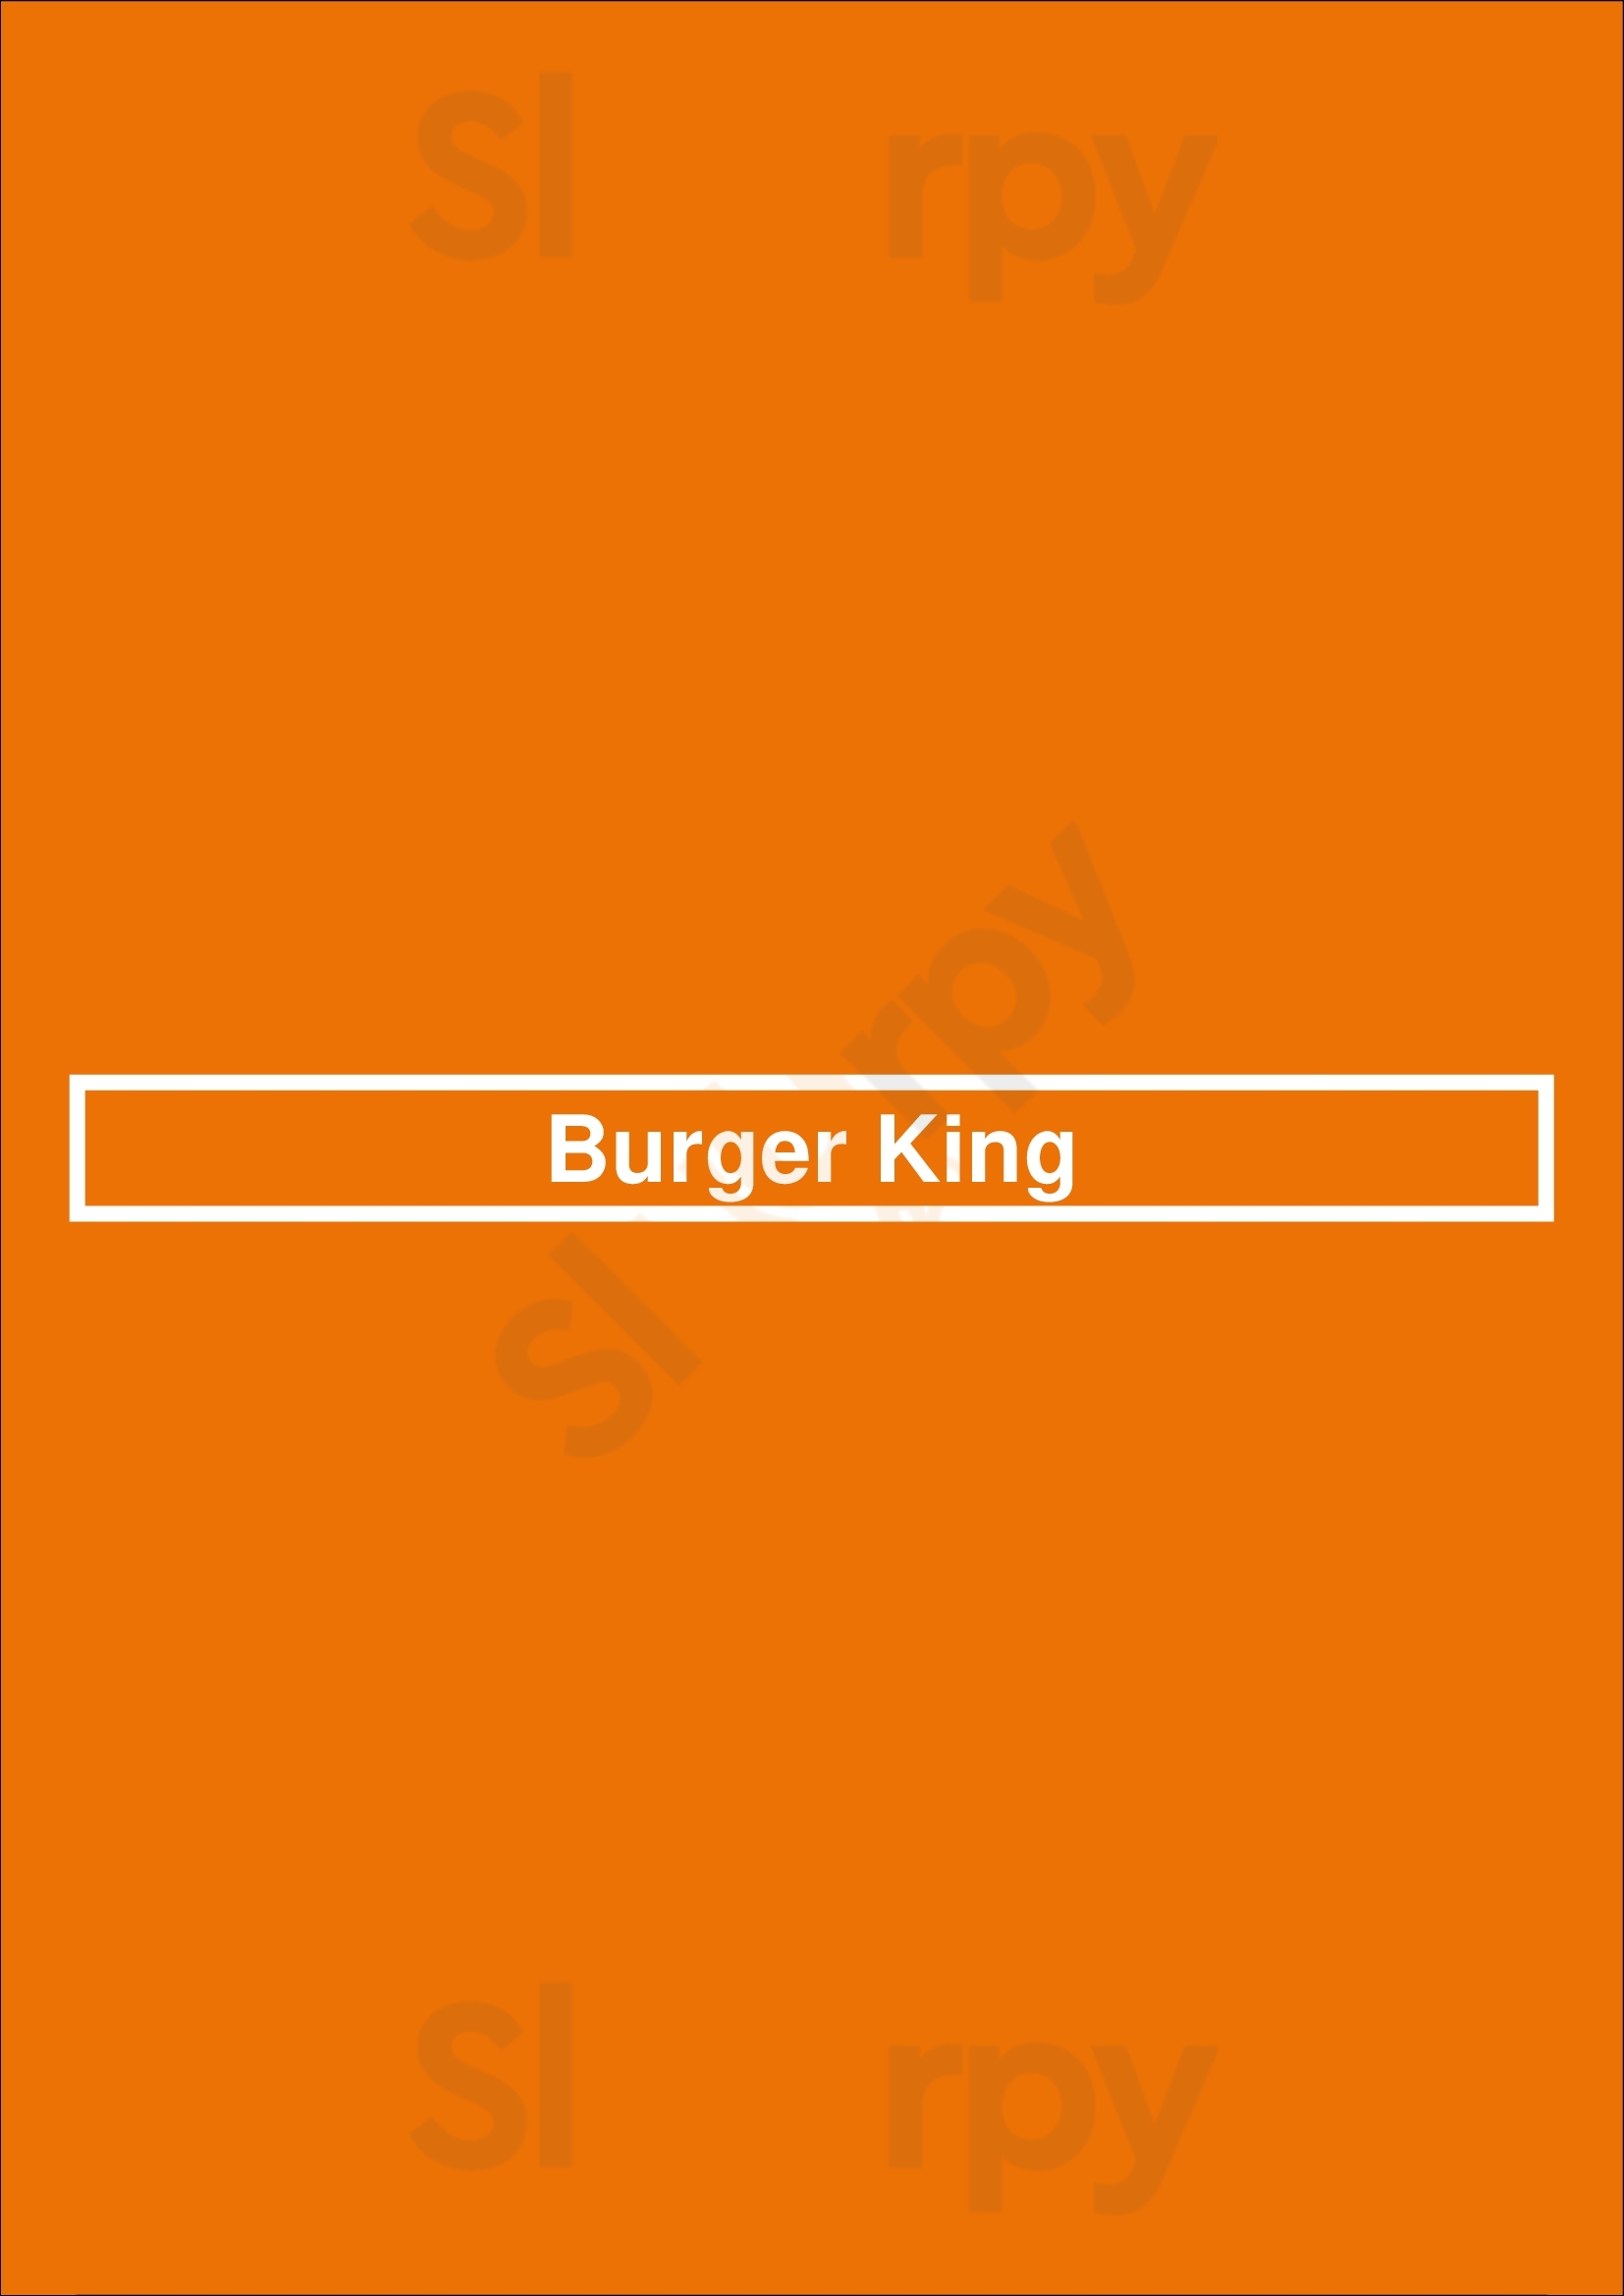 Burger King Lakewood Menu - 1